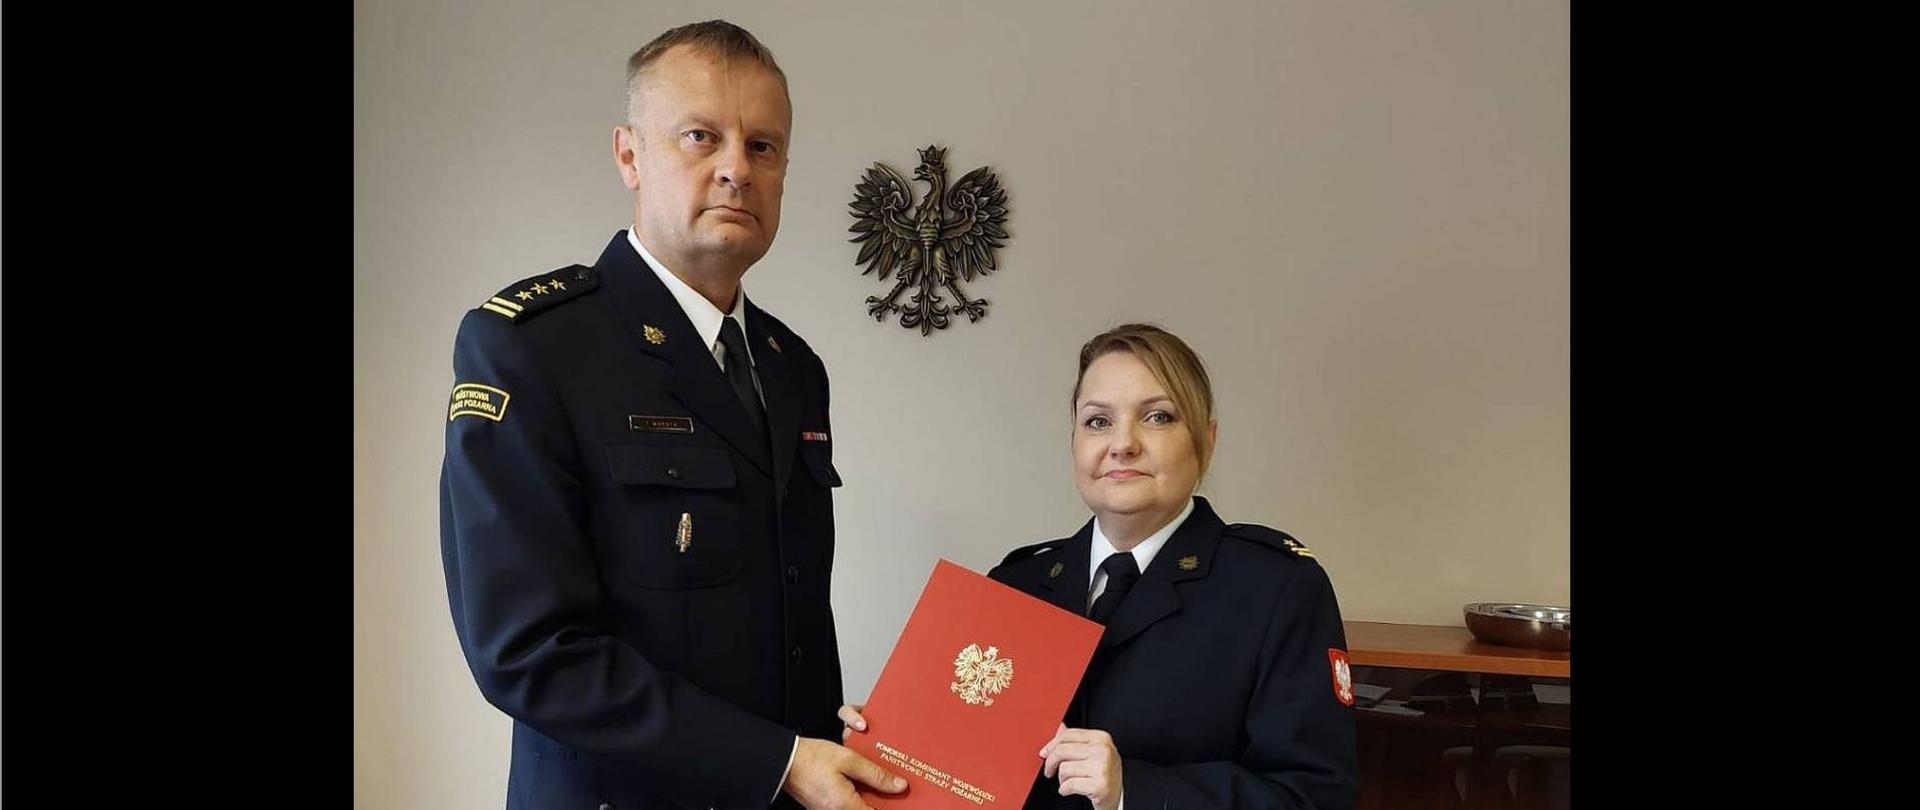 Zdjęcie przedstawia komendanta powiatowego wręczającego nagrodę wyróżnionej funkcjonariuszce. W tle godło polski.